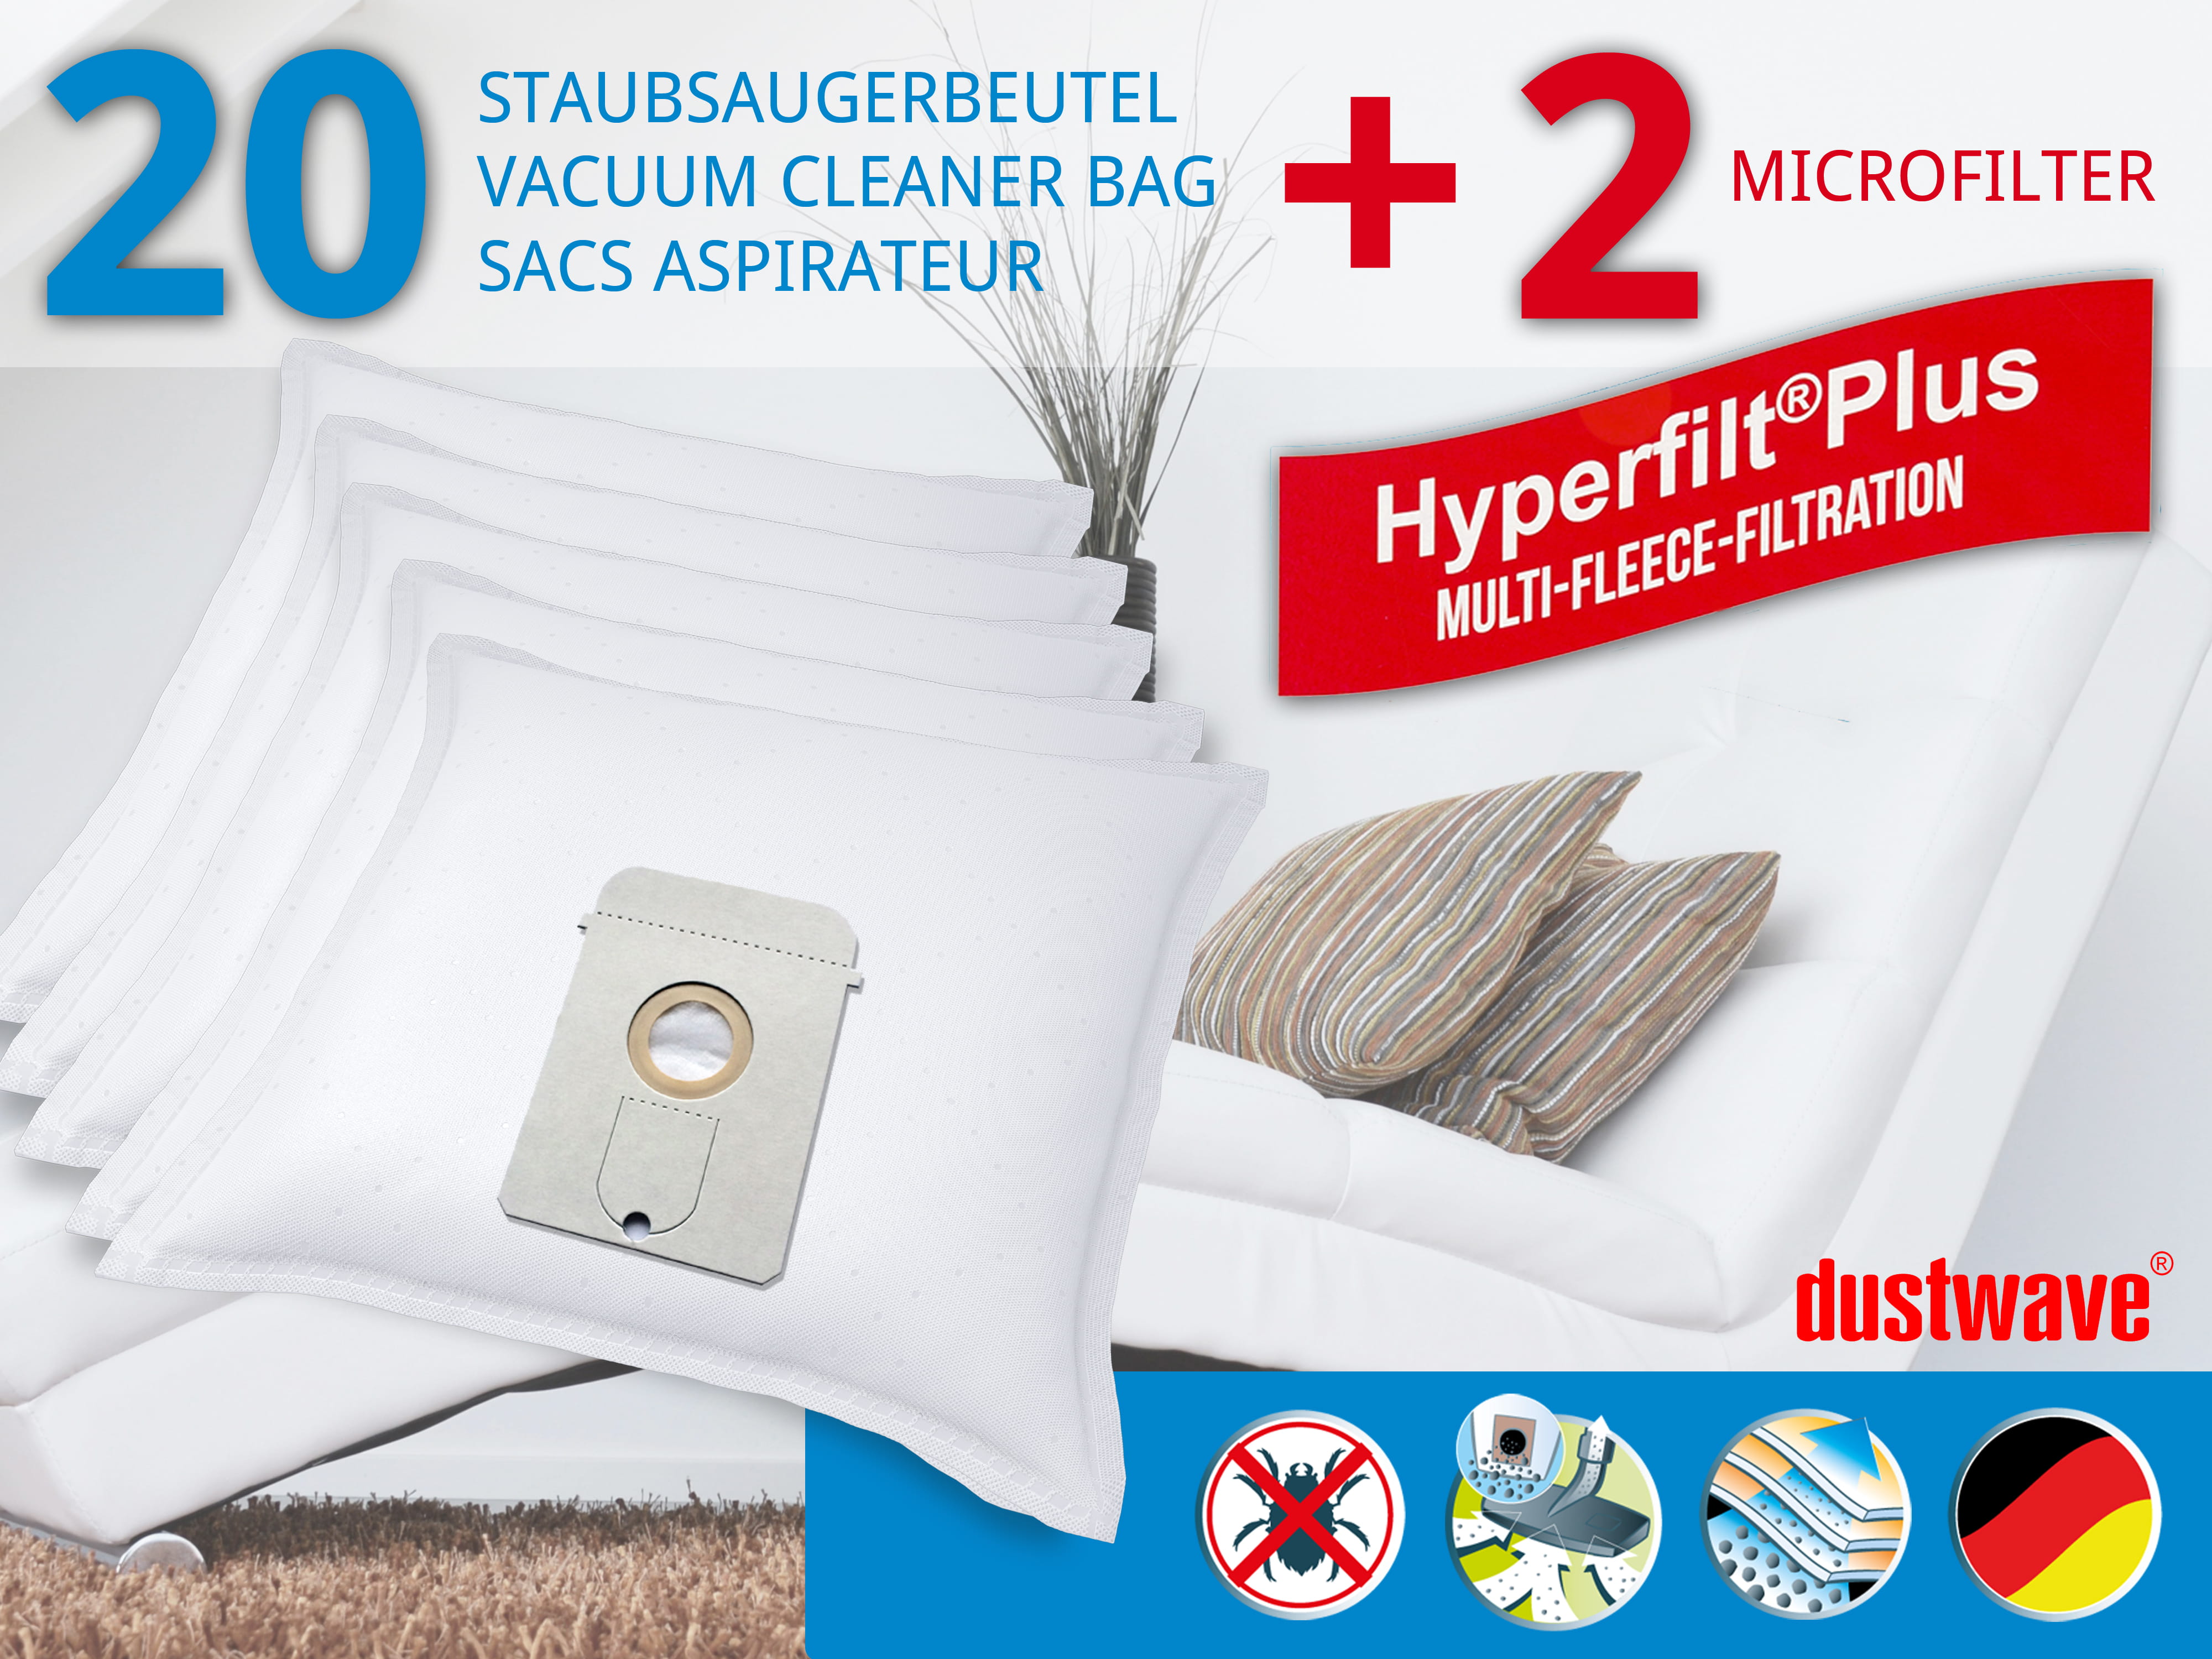 Dustwave® 20 Staubsaugerbeutel für AEG Vampyr 8100 - hocheffizient, mehrlagiges Mikrovlies mit Hygieneverschluss - Made in Germany